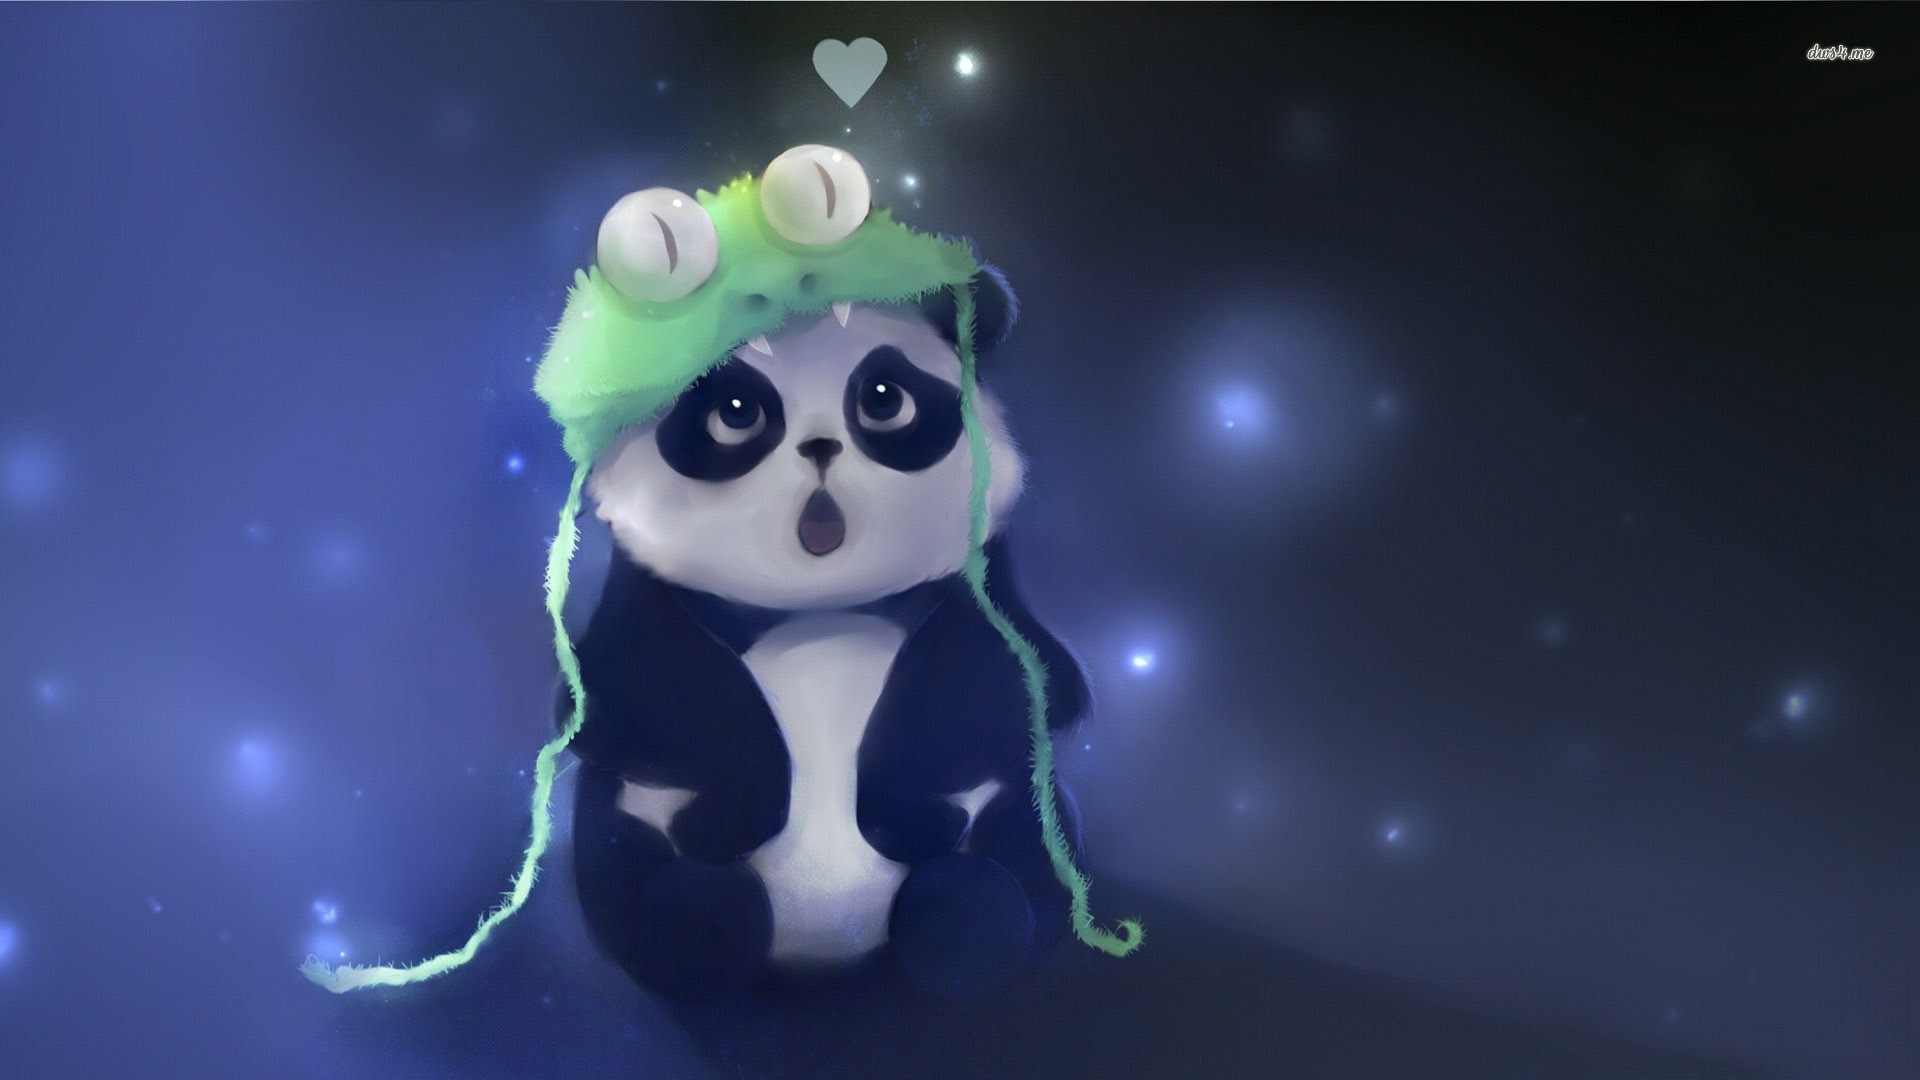 Cute Cartoon Panda Wallpaper Image